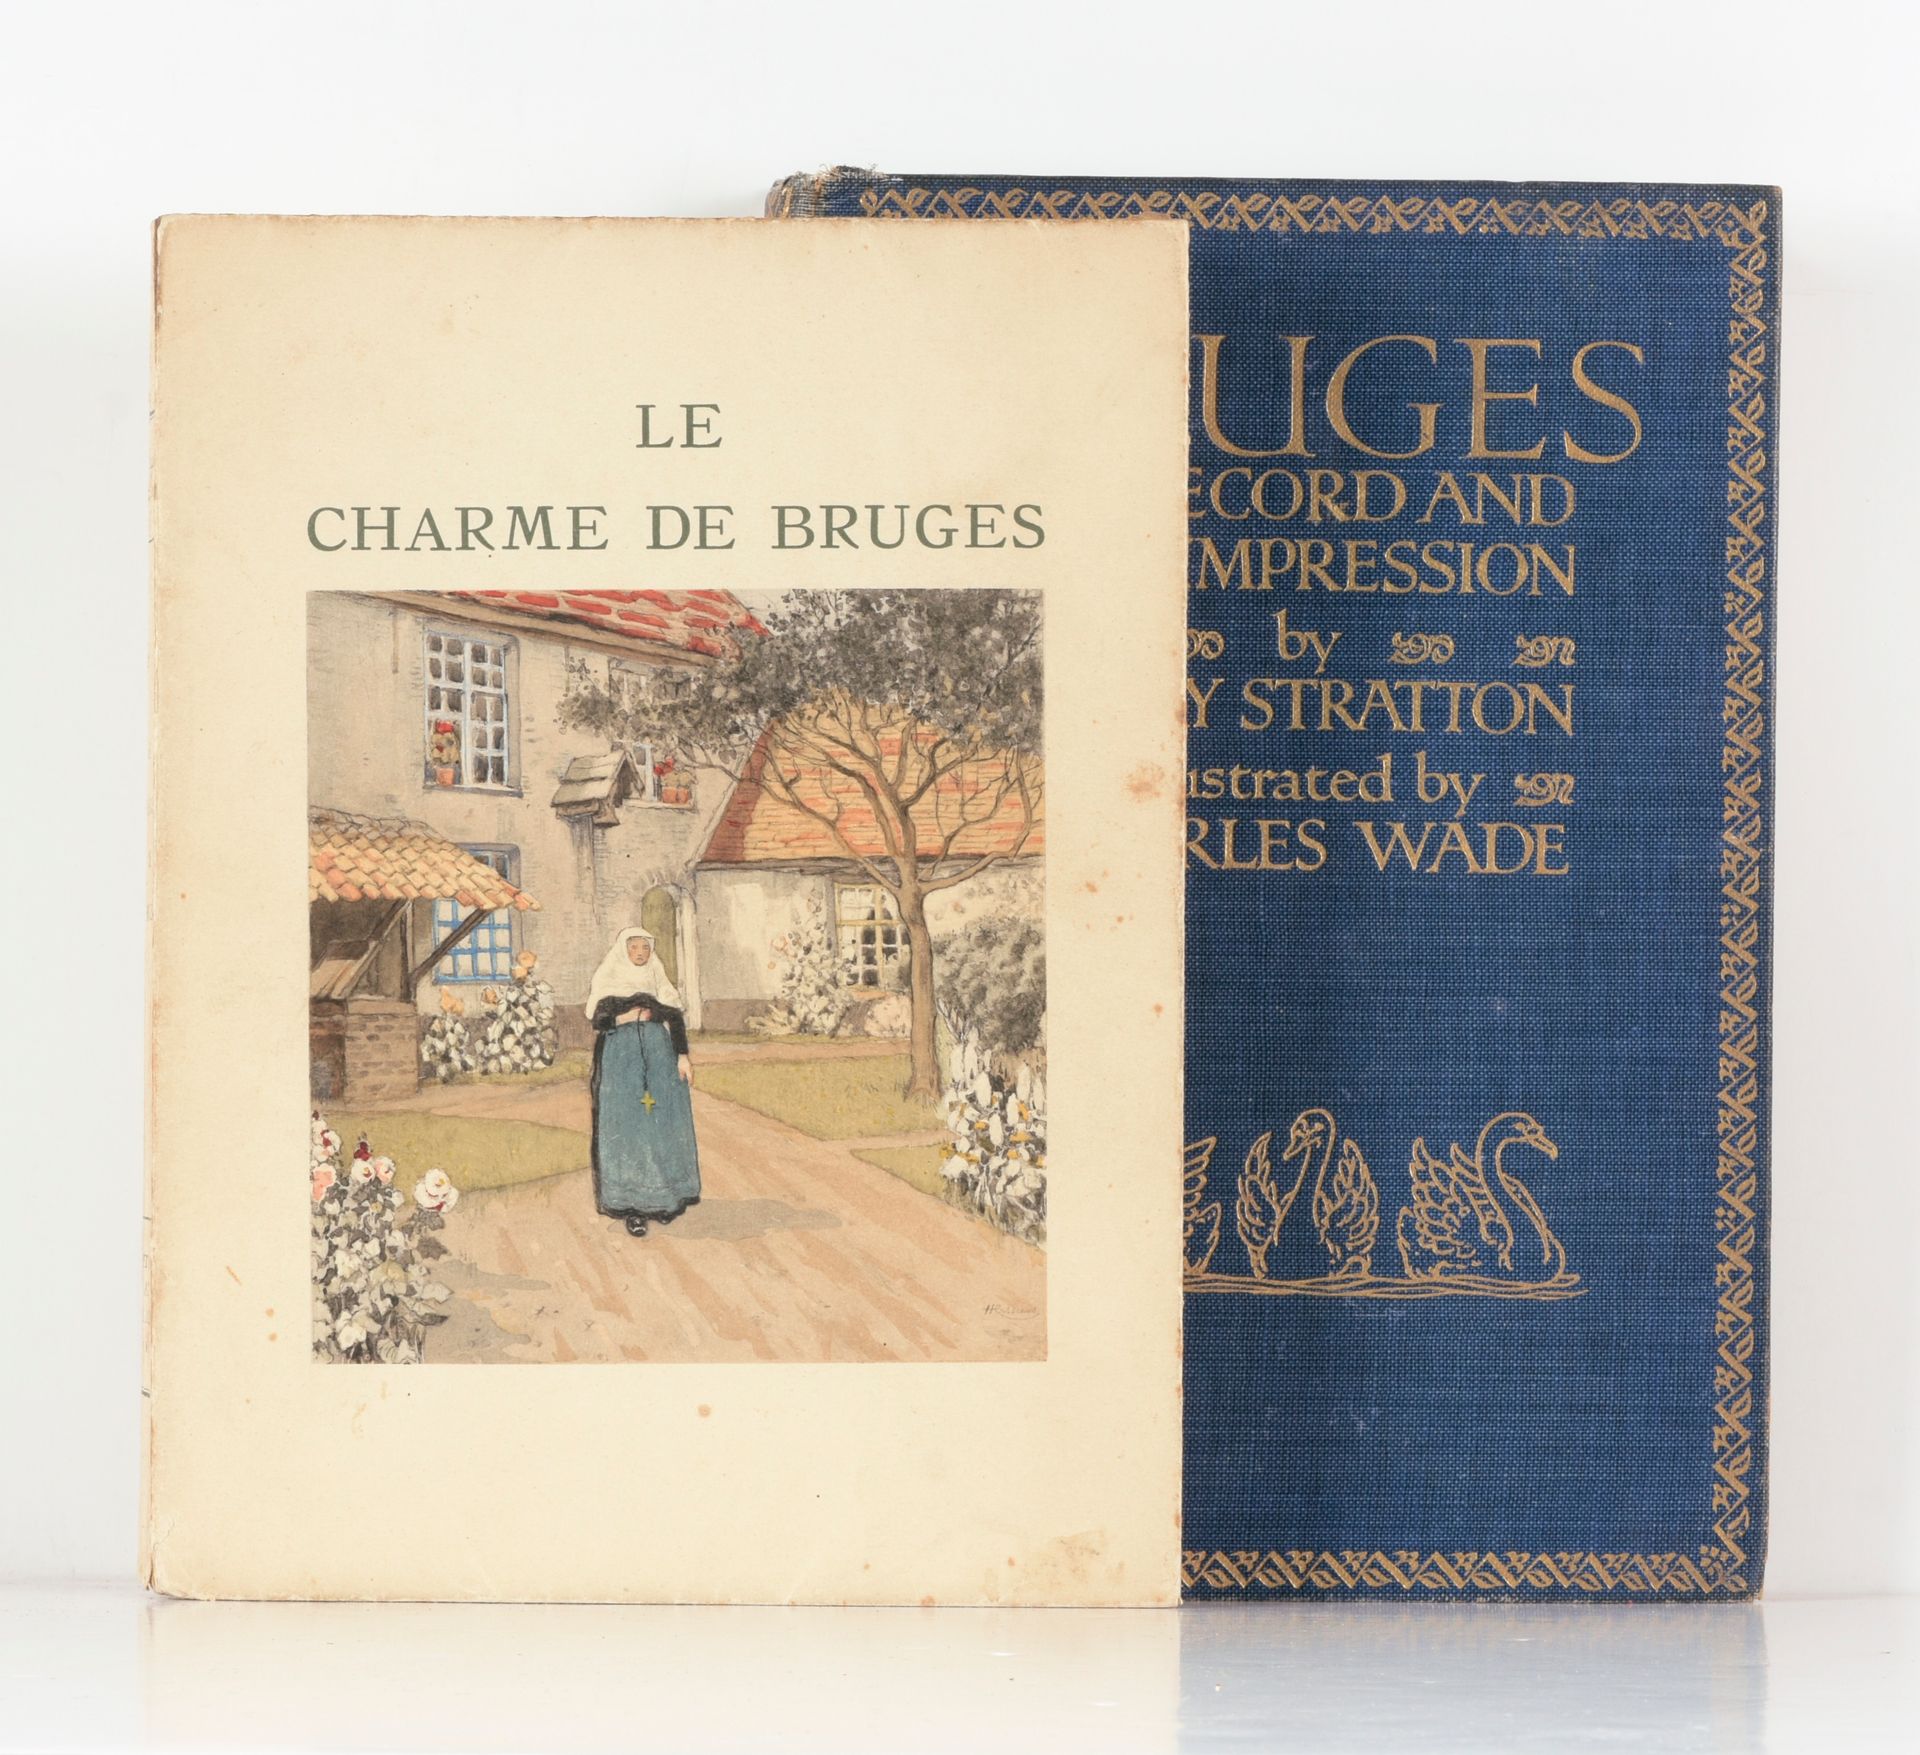 MAUCLAIR, Camille Le charme de Bruges

Paris
H. Piazza
1943

8°, ill. Coul. By H&hellip;